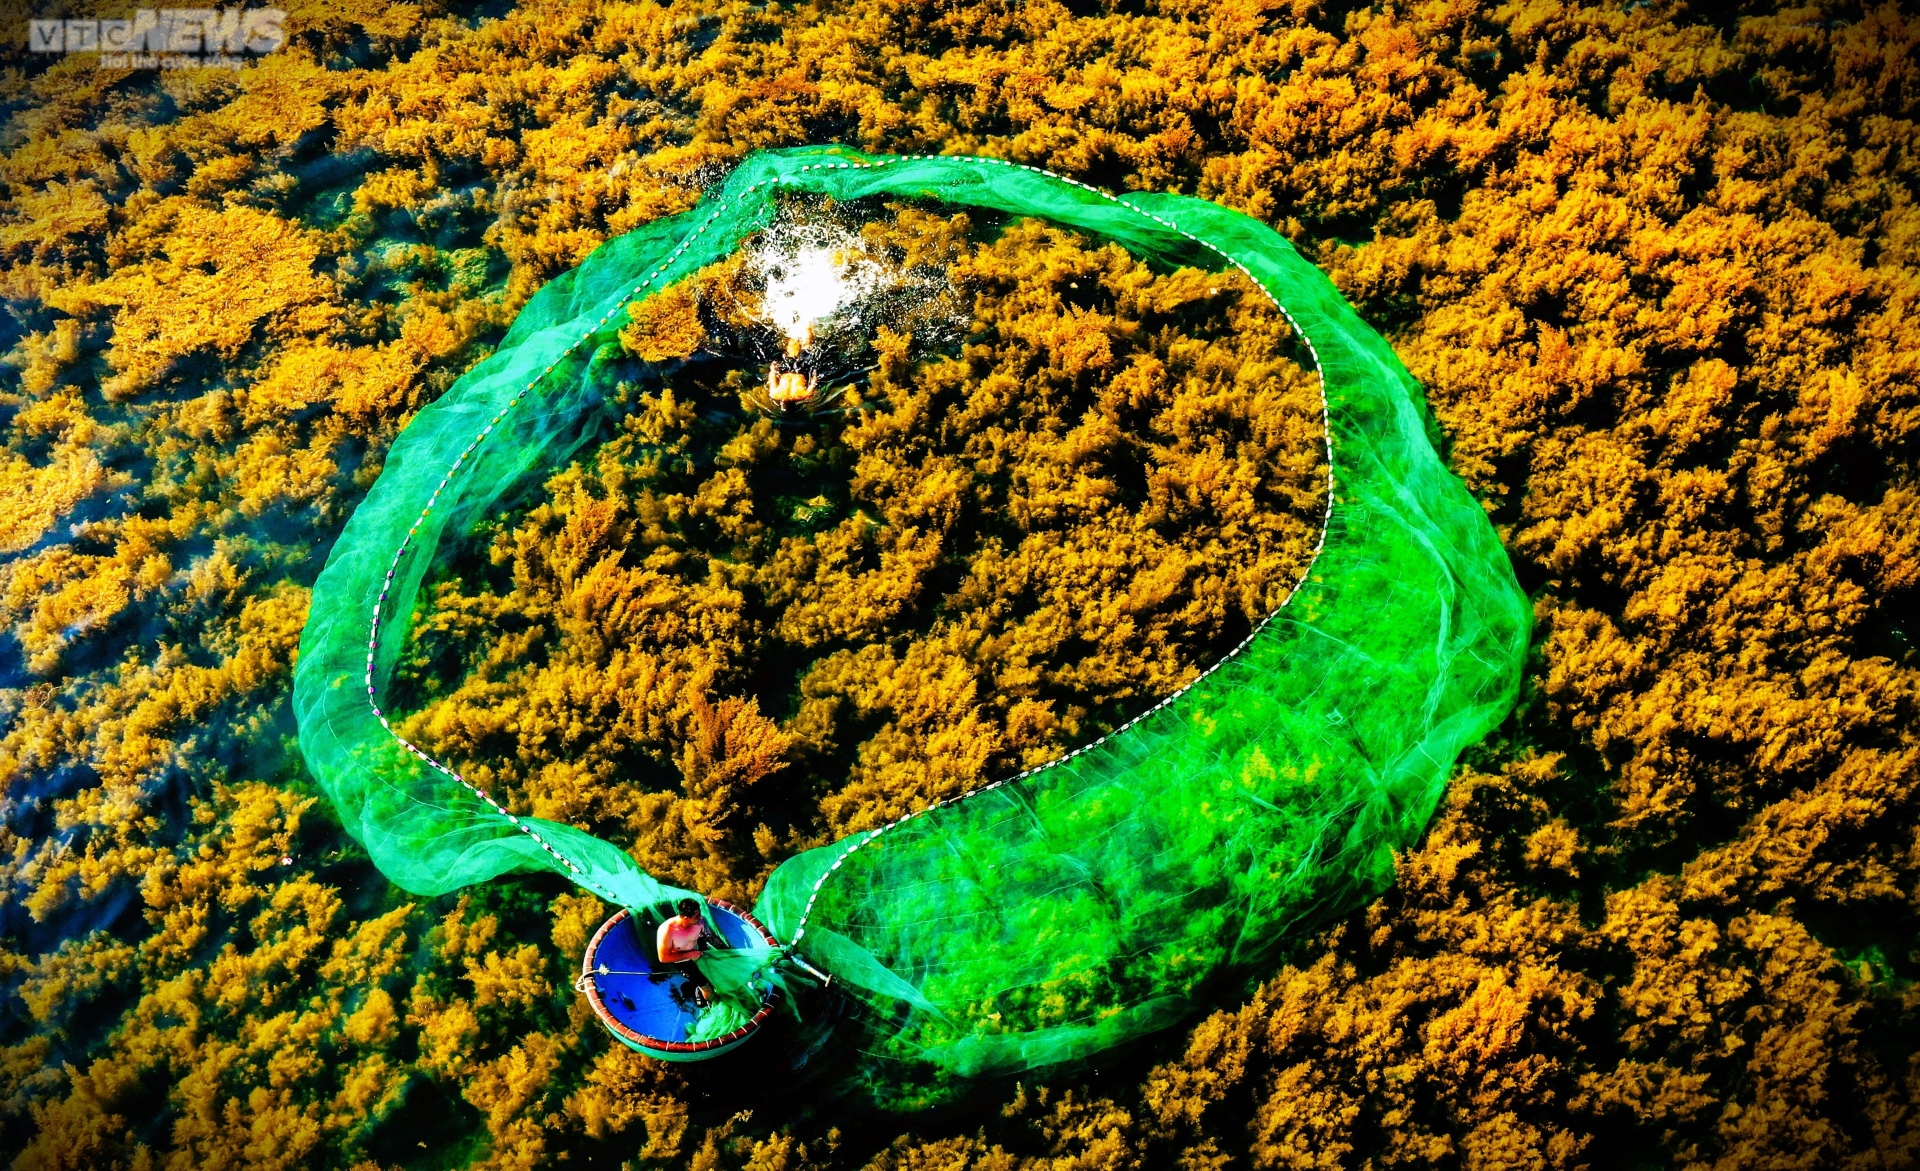 Ngất ngây 'cánh đồng vàng' dưới biển xanh trong ở đảo Hòn Khô, Bình Định - Ảnh 4.